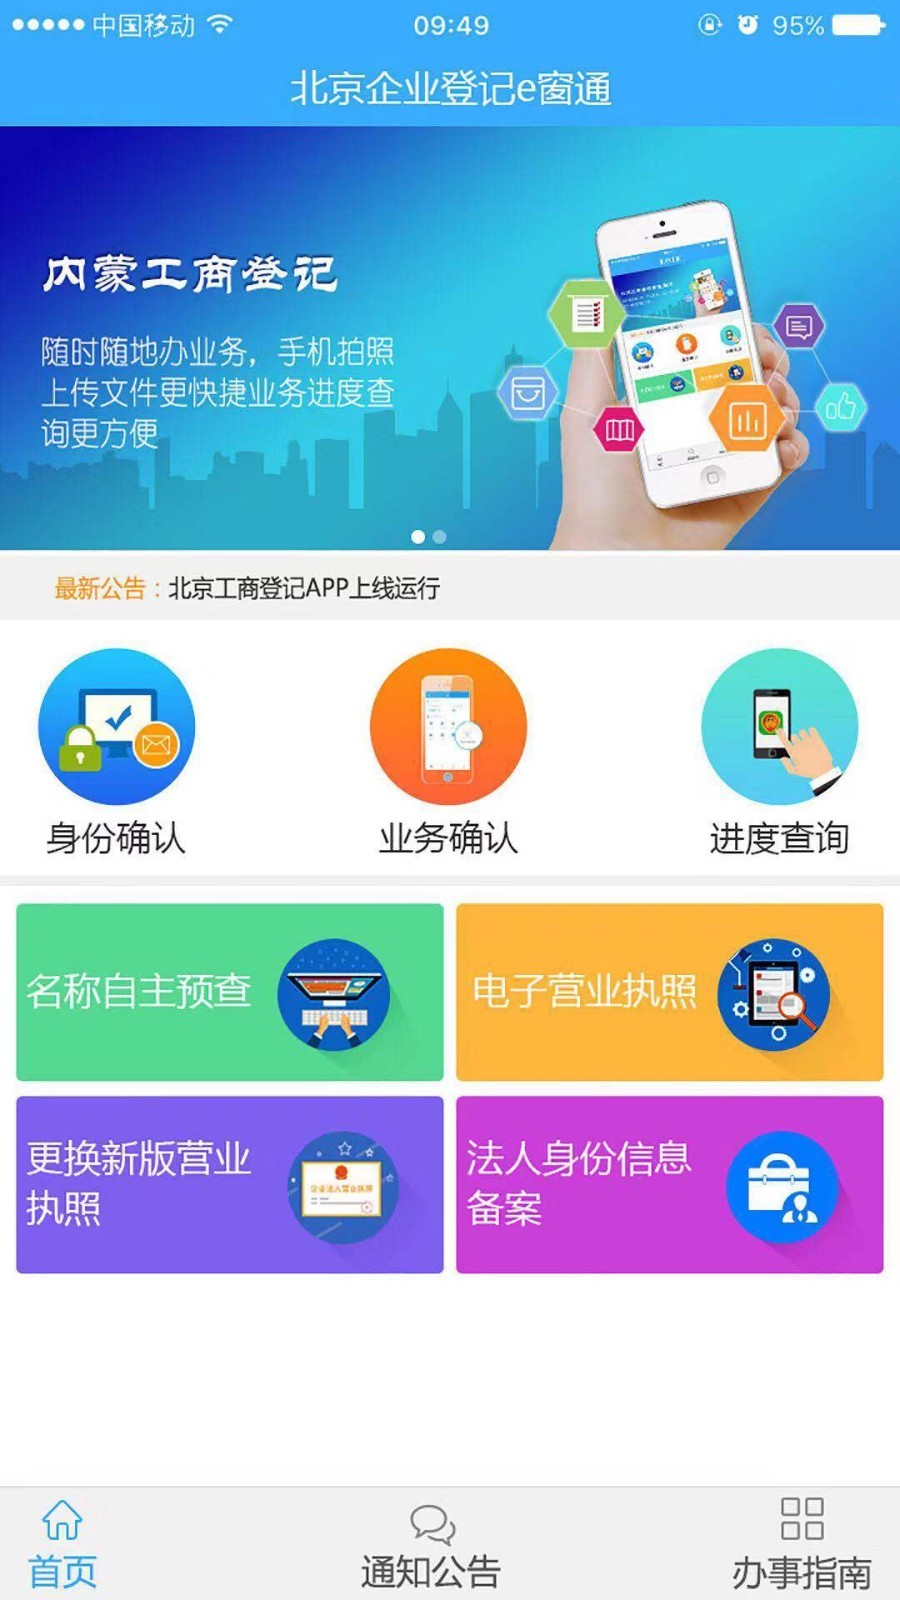 北京工商网上服务平台-01